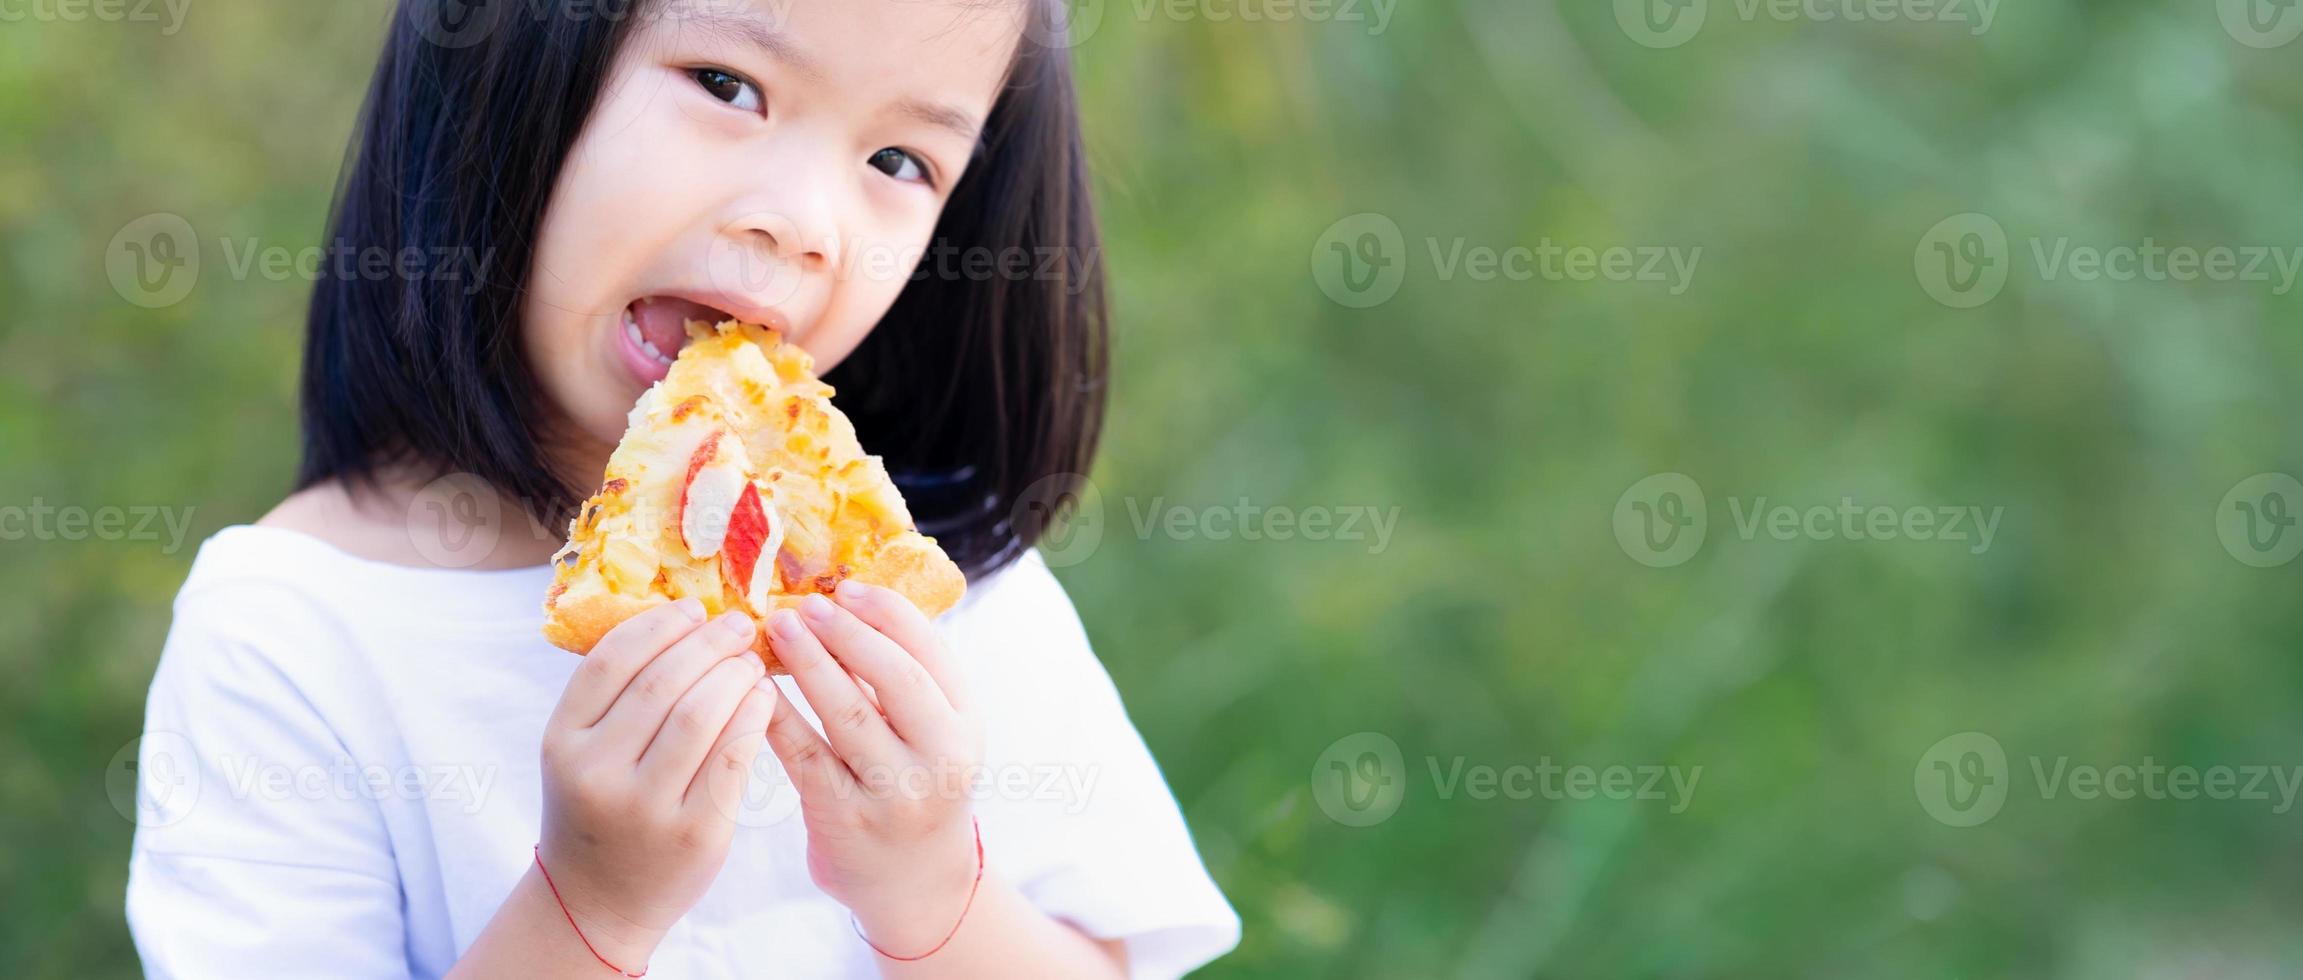 La mano del niño sostiene una deliciosa pizza. niño niña está feliz de comer comida. espacio vacío para ingresar texto. foto